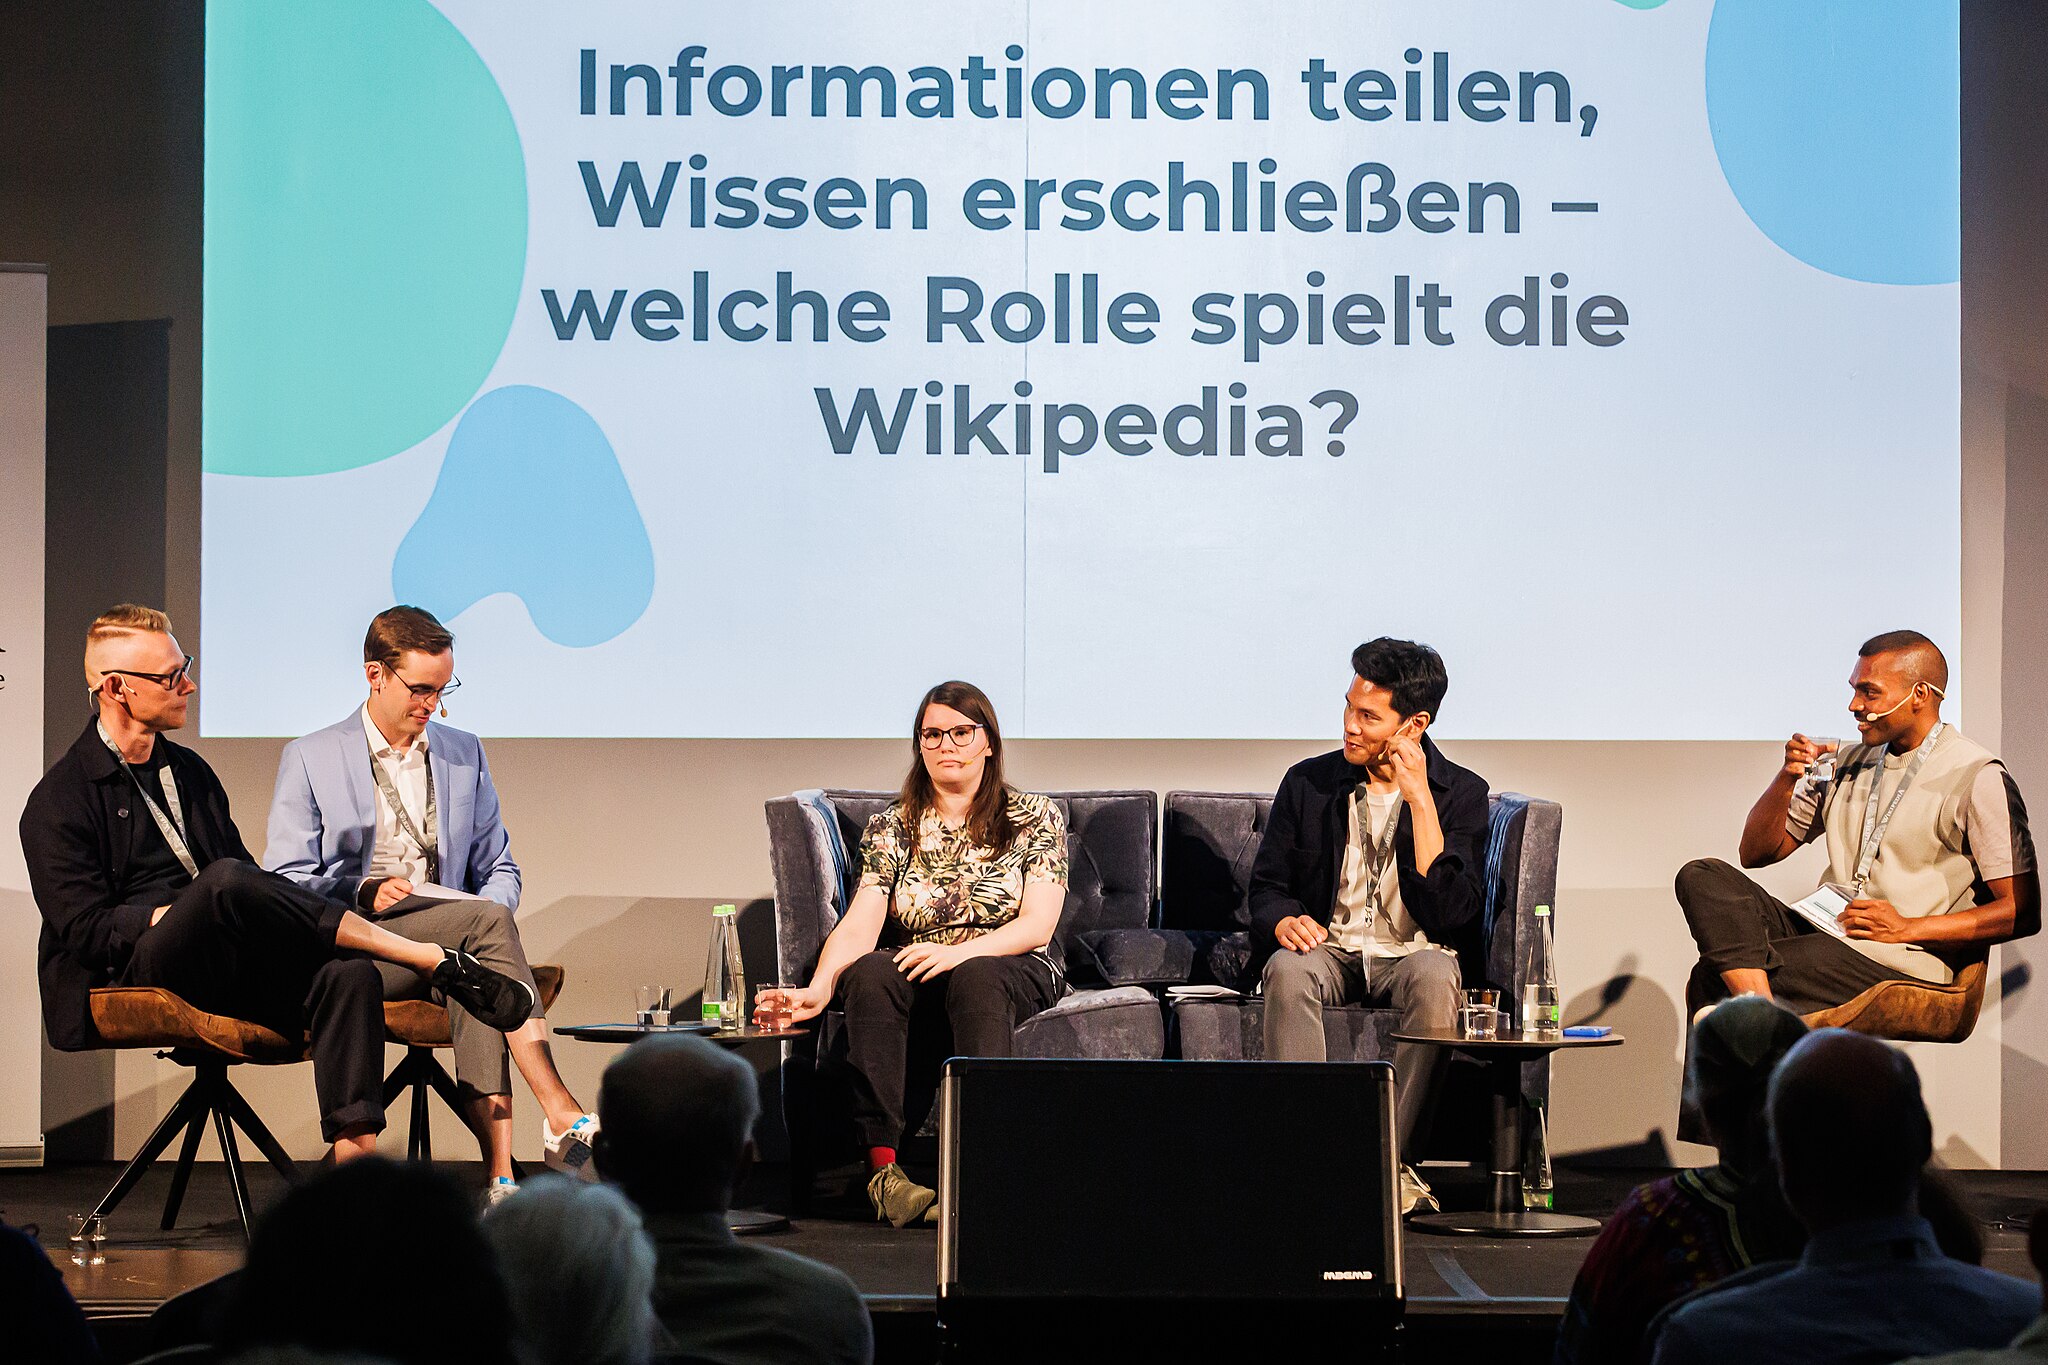 Das Podium „Informationen teilen, Wissen erschließen – welche Rolle spielt die Wikipedia?“ mit (von links nach rechts) Christian Pentzold, Bernd Fiedler, CaroFraTyskland, Chris Tedjasukmana und Sinthujan Varatharajah.